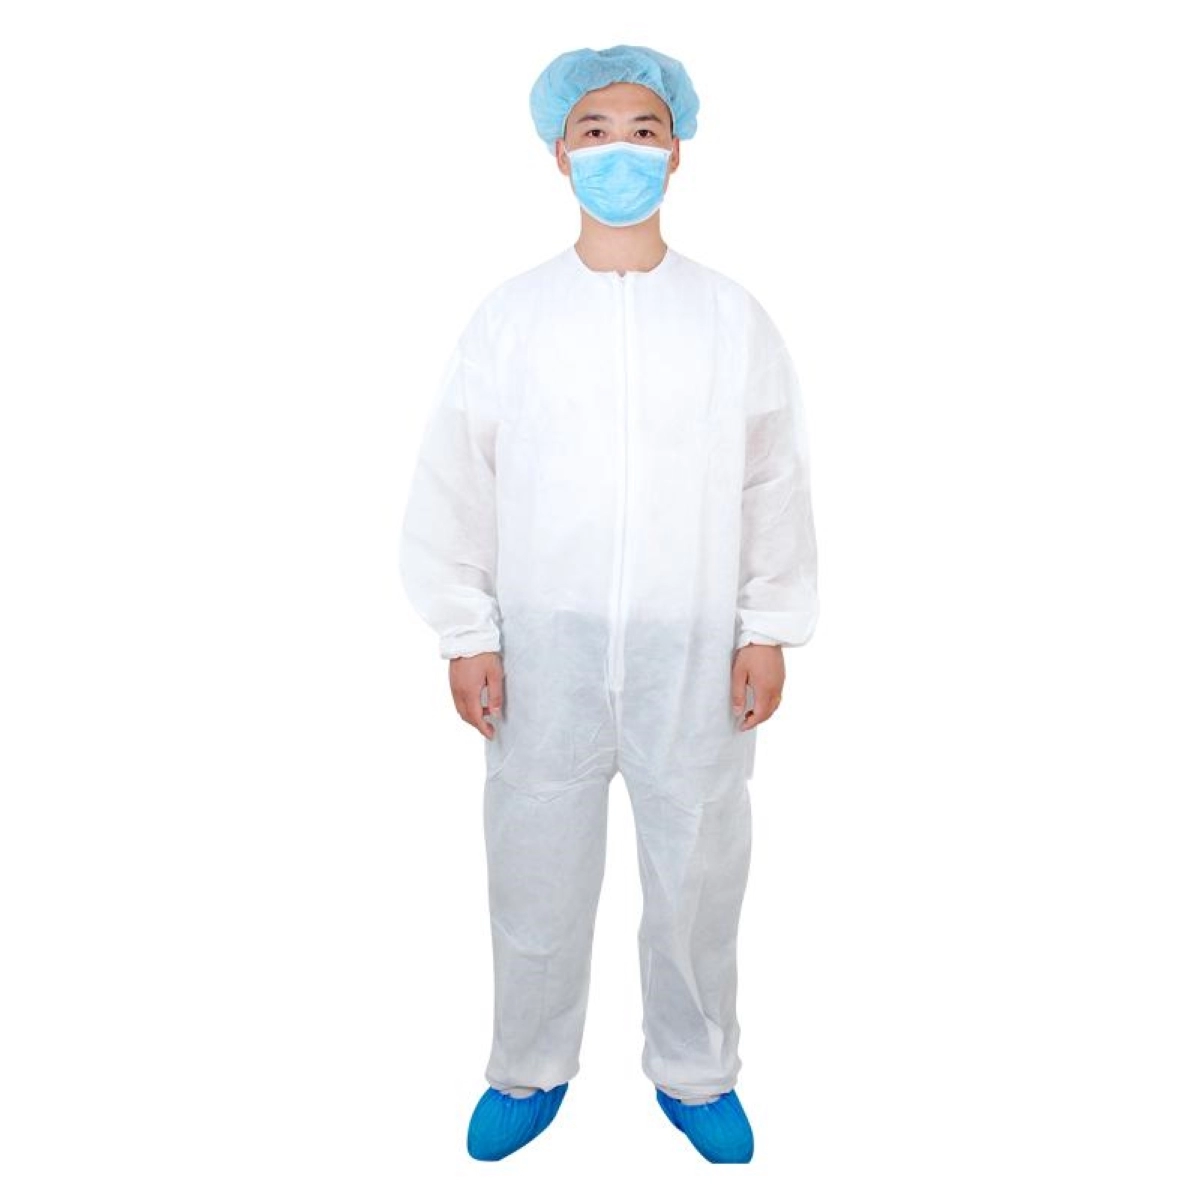 Оптовая продажа хирургических одноразовых защитных костюмов полипропиленовый нетканый одноразовый медицинский костюм изоляционное платье комбинезоны СИЗ халаты